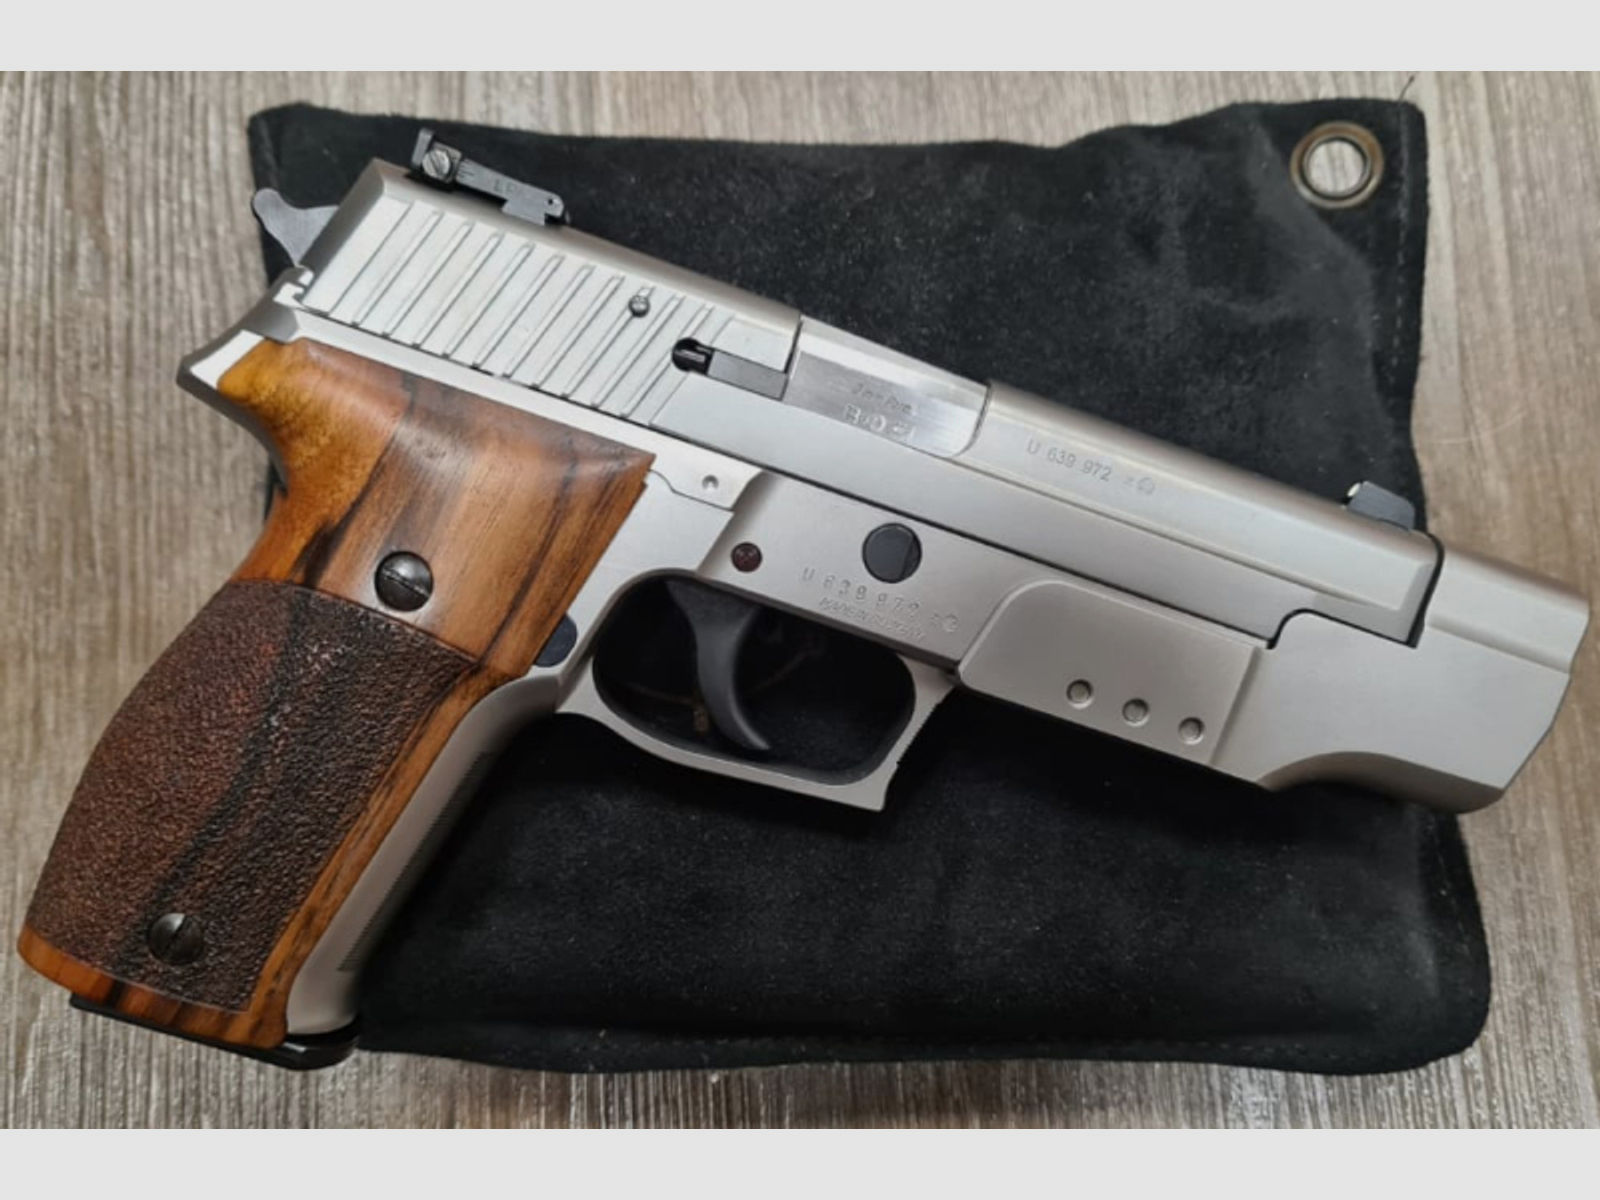 SigSauer P226S 9mm Luger